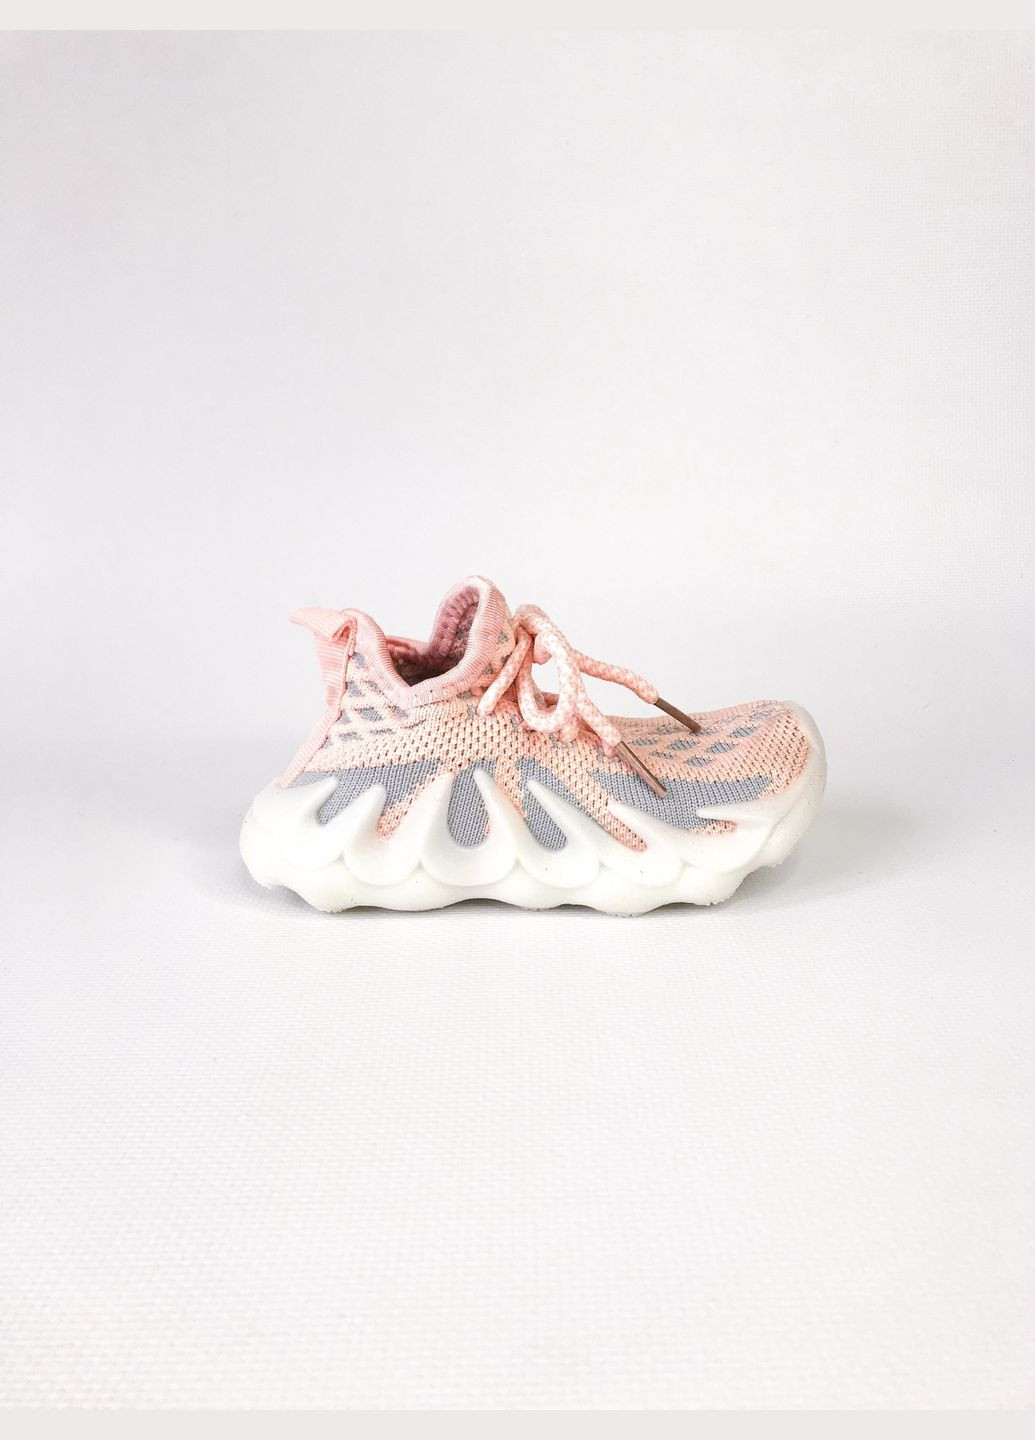 Розовые кроссовки 20 г 14,2 см розовый артикул к143 Kimbo-O